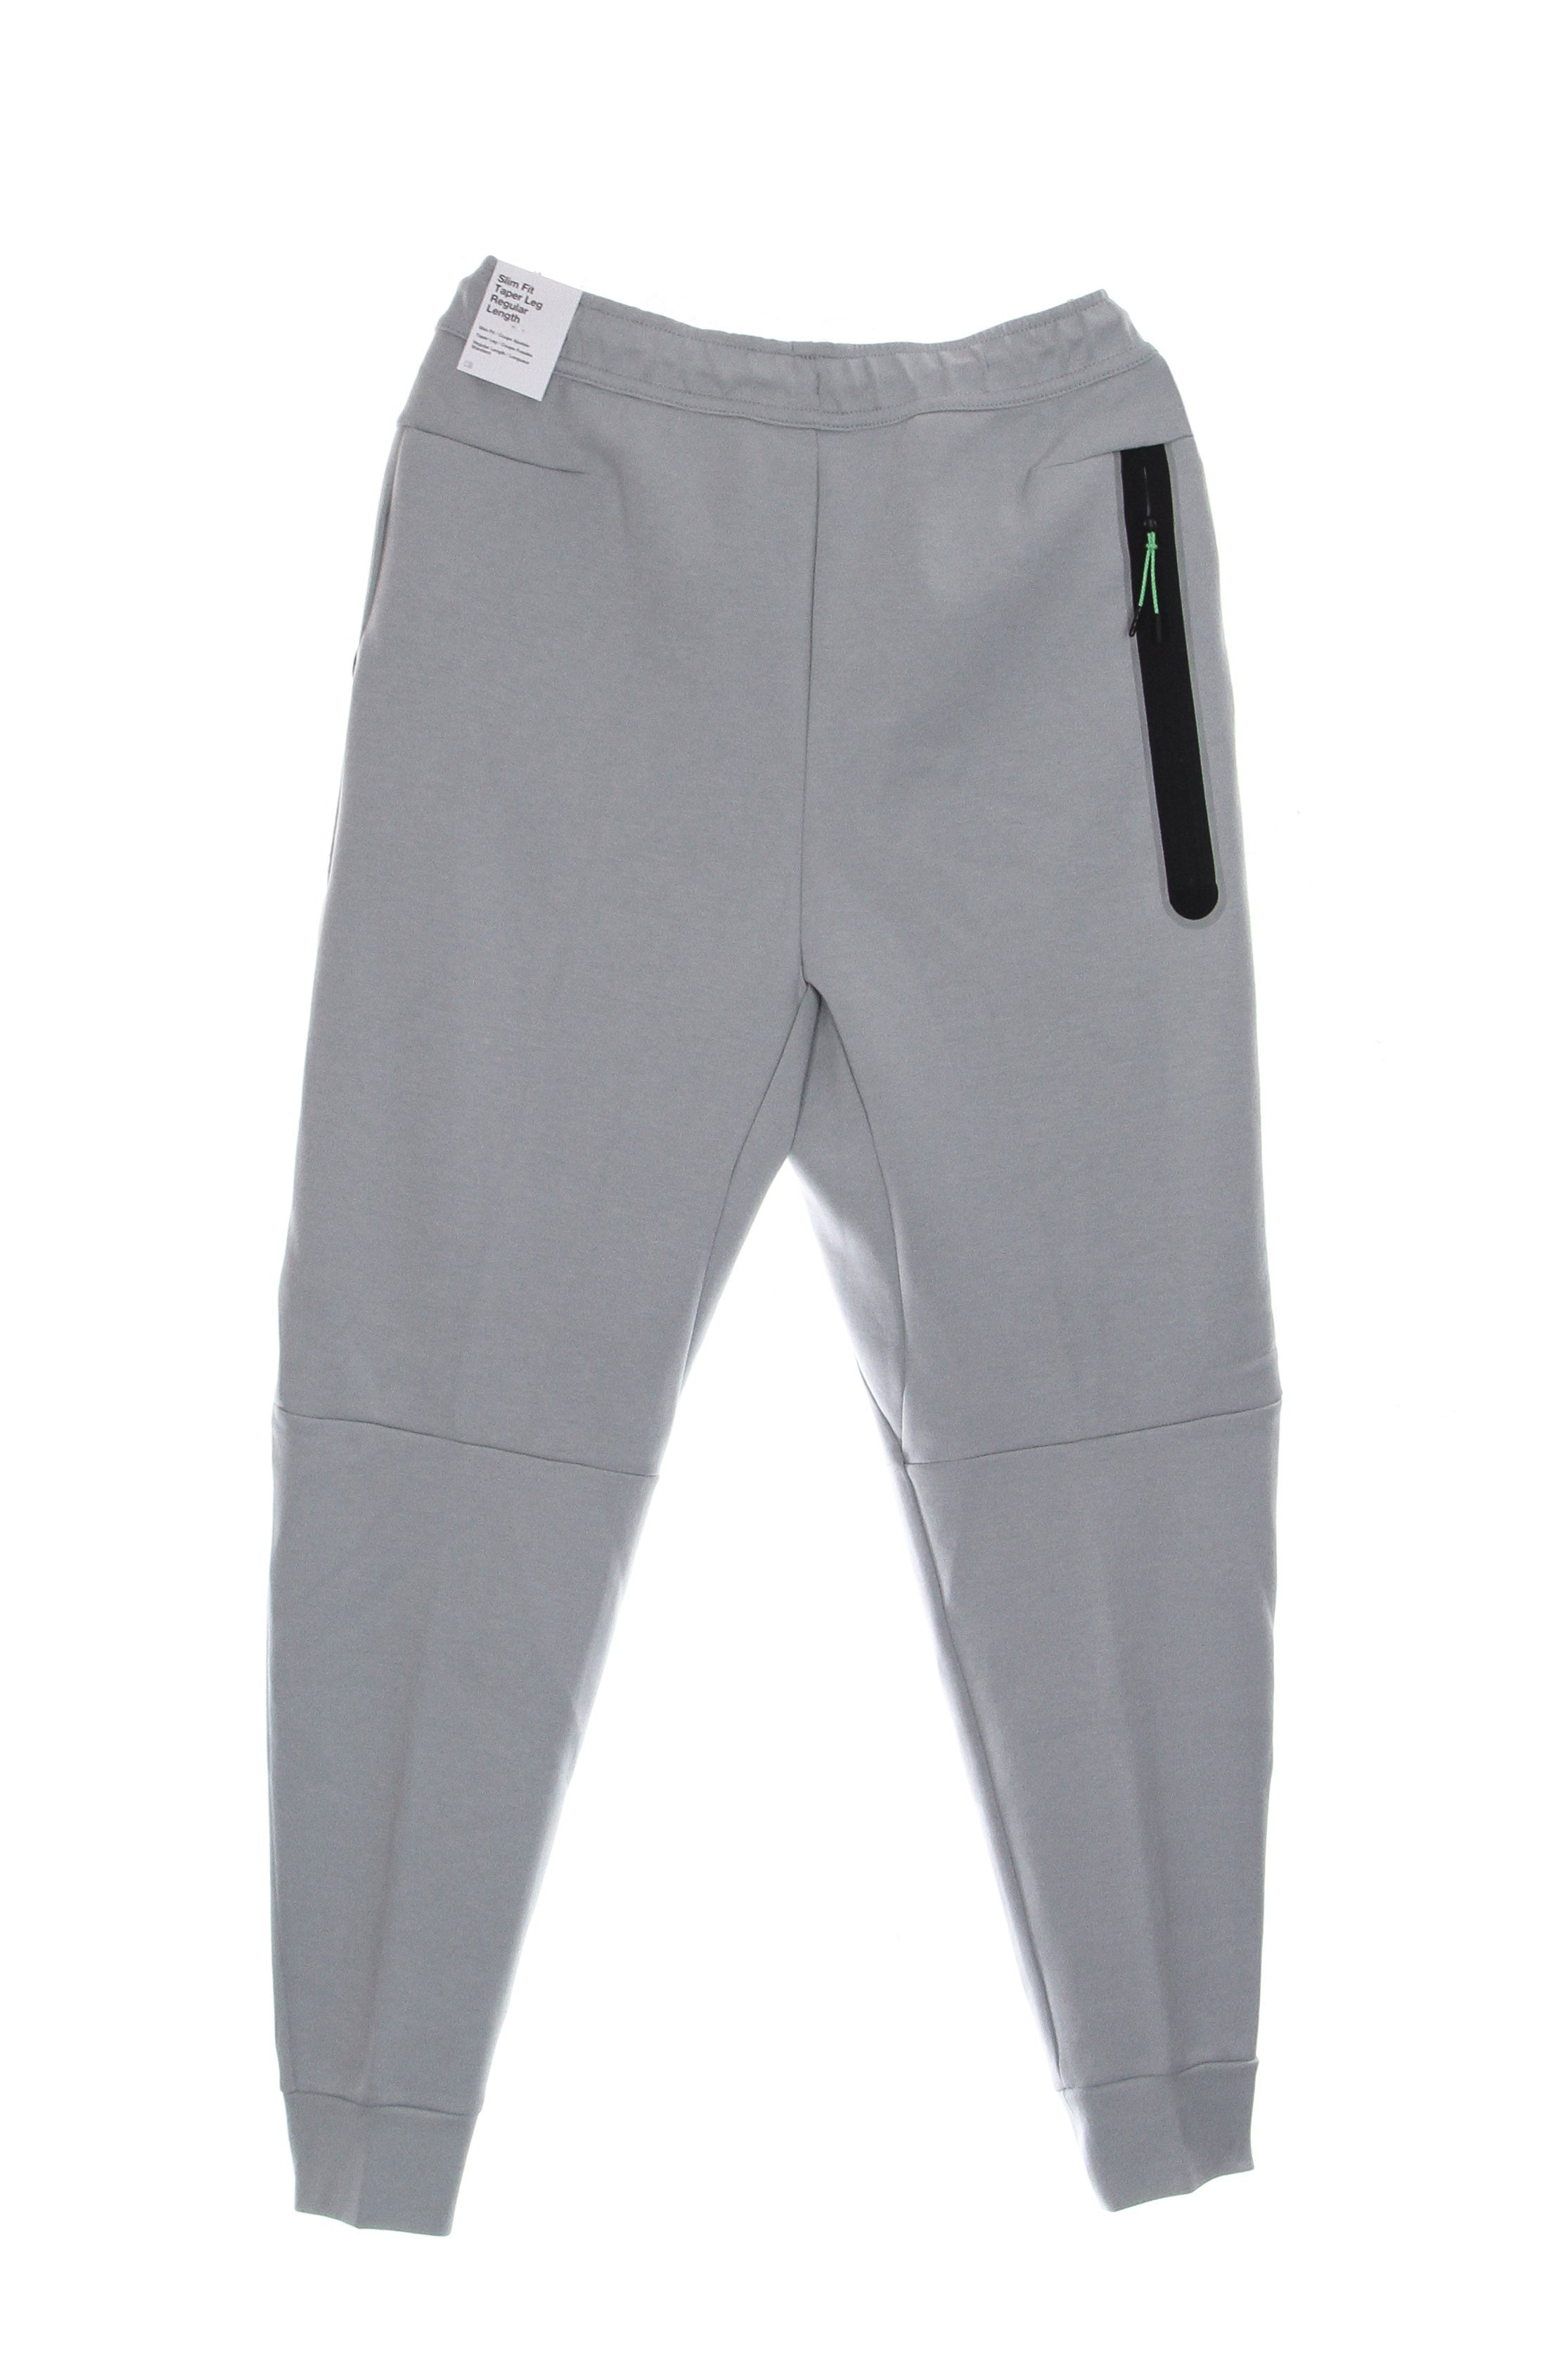 Pantalone Tuta Leggero Uomo Sportswear Tech Fleece Pant Lt Smoke Grey/anthracite/sail